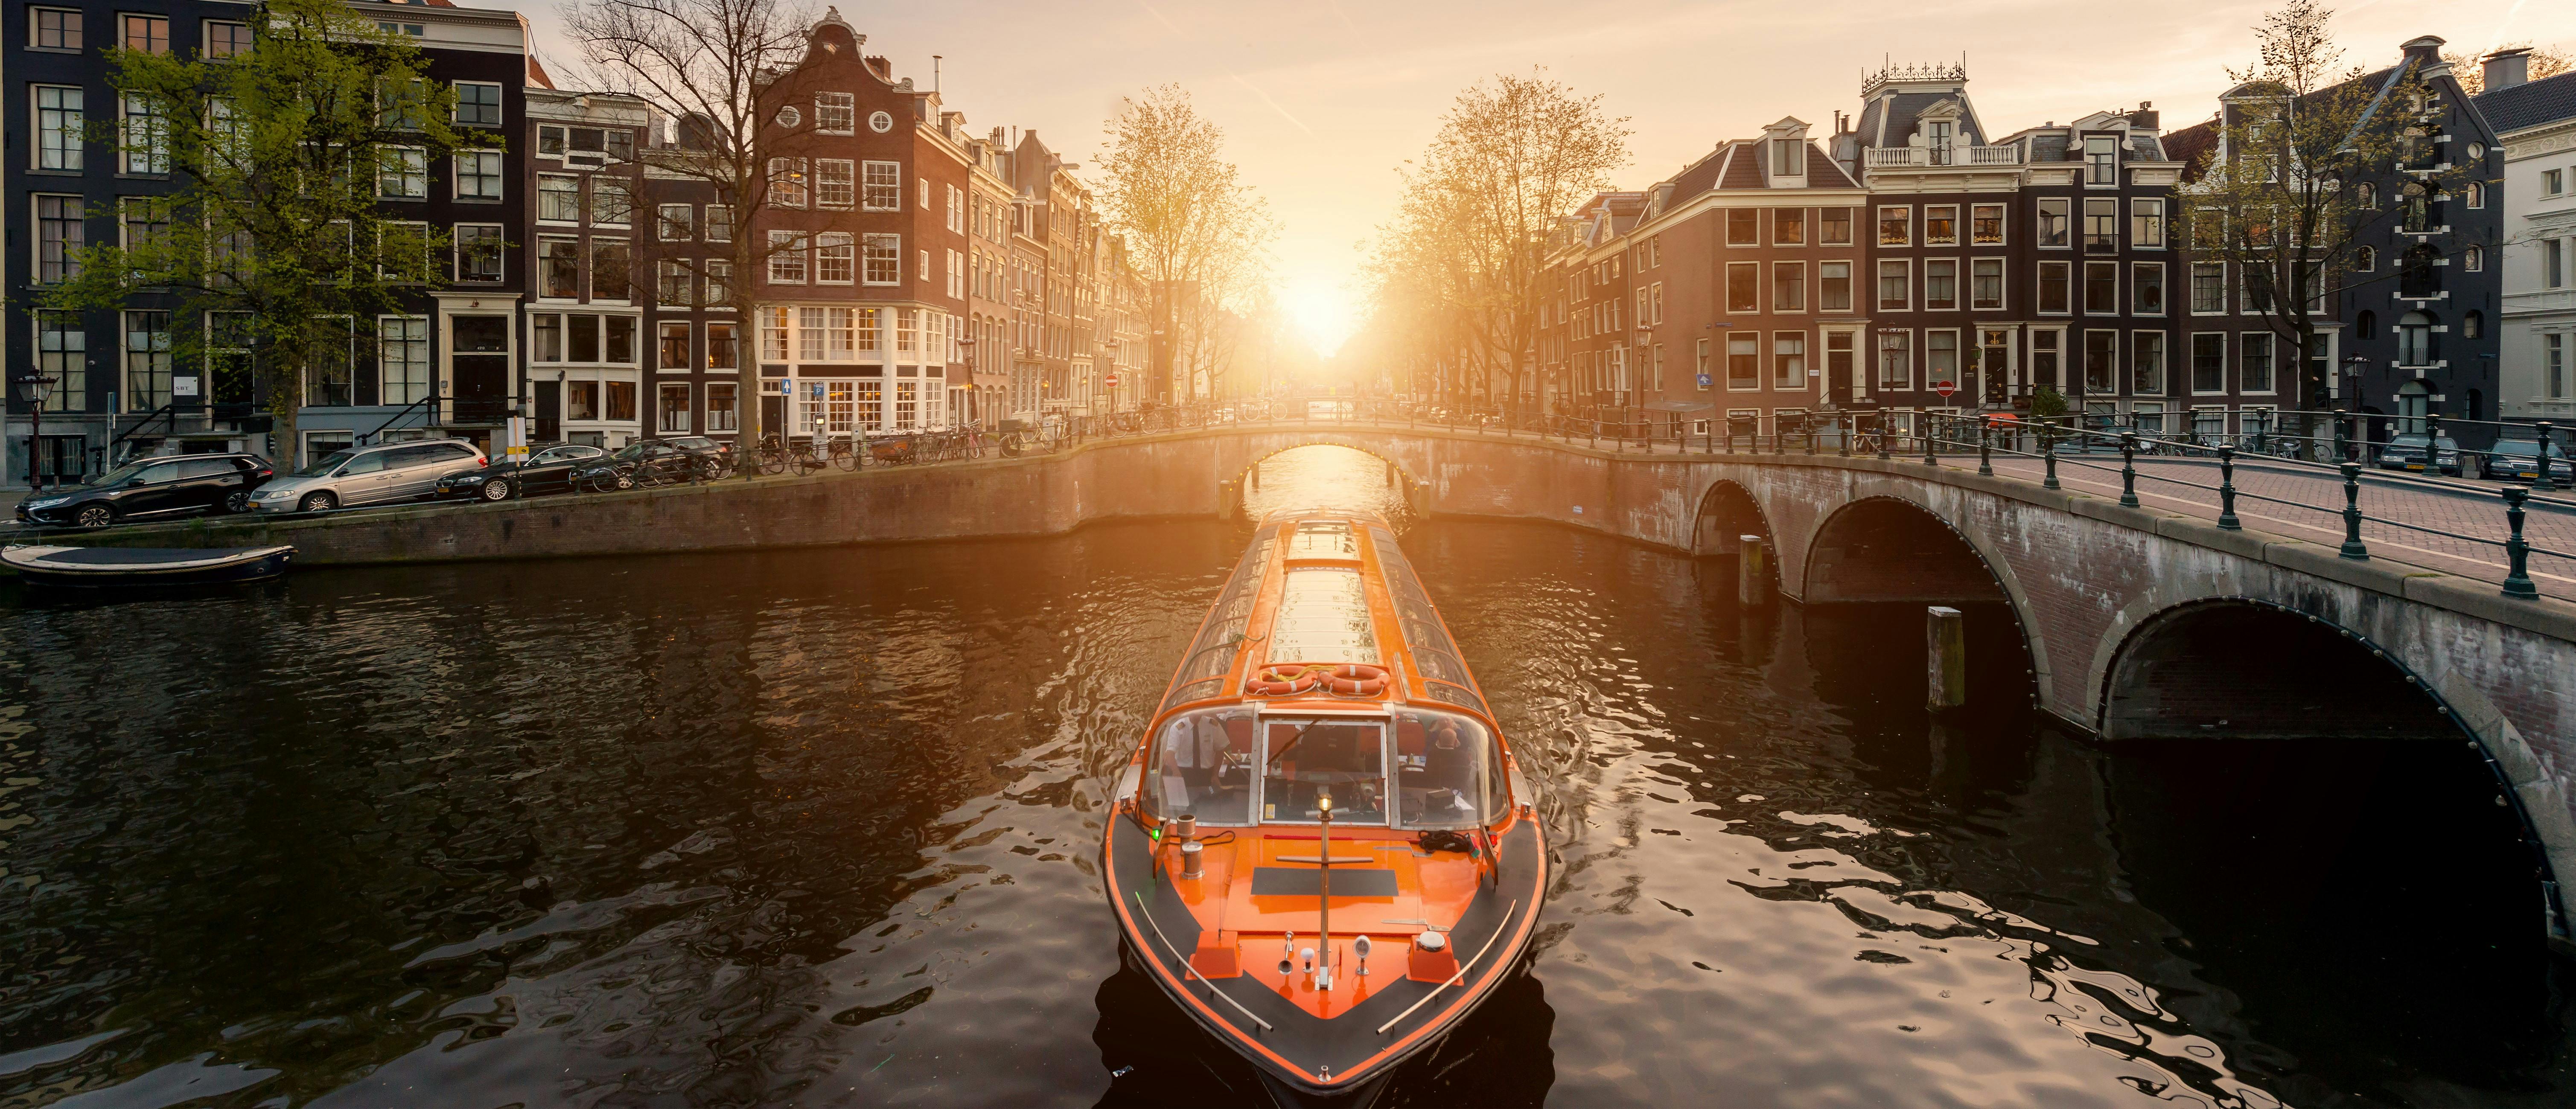 Biglietto da 1 o 2 giorni per la vita notturna di Amsterdam e biglietto per la crociera sui canali